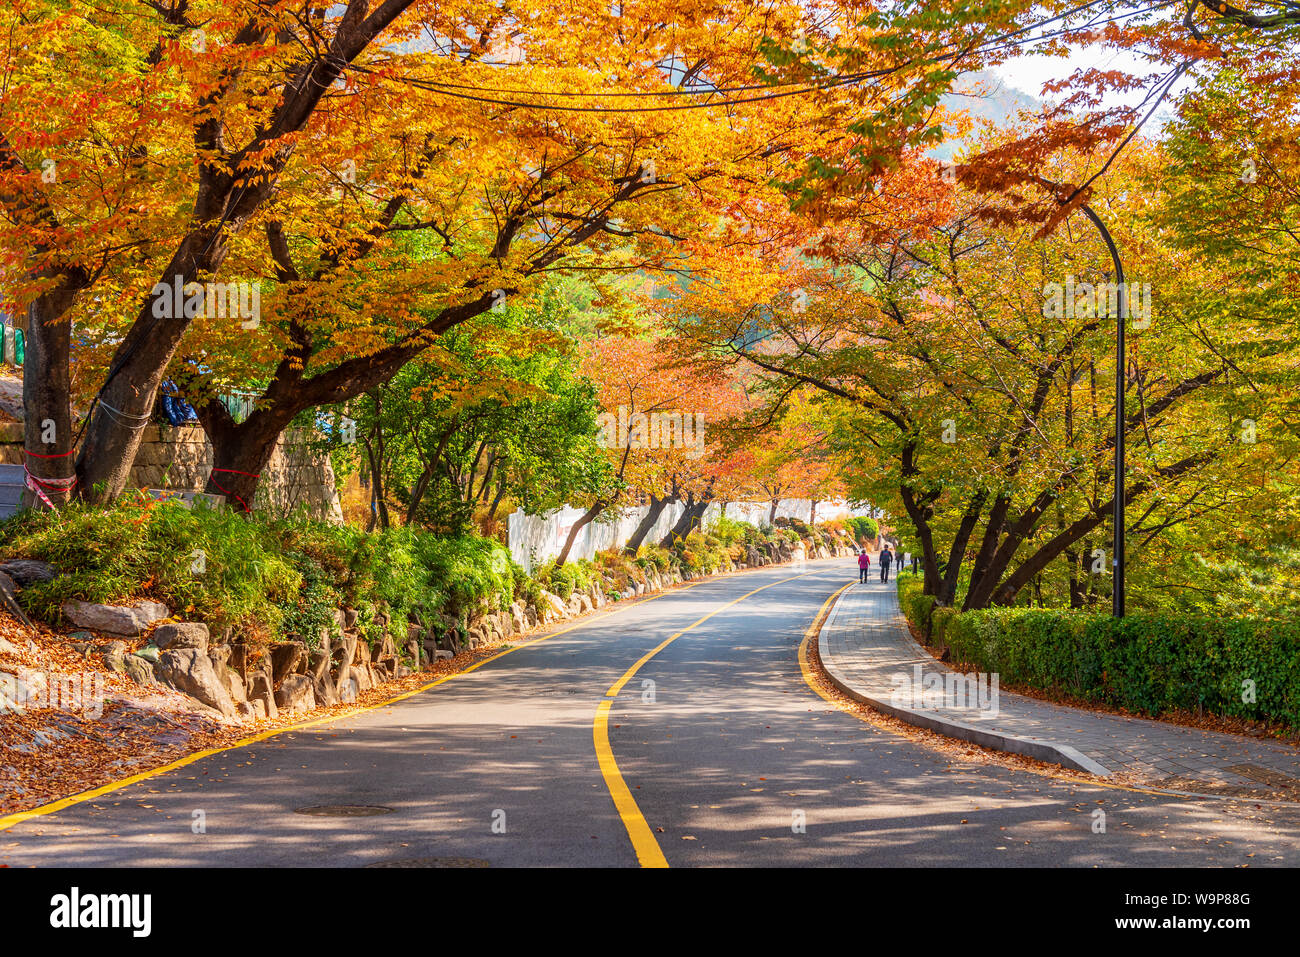 Autumn of Namsan Tower in Seoul,South Korea. Stock Photo